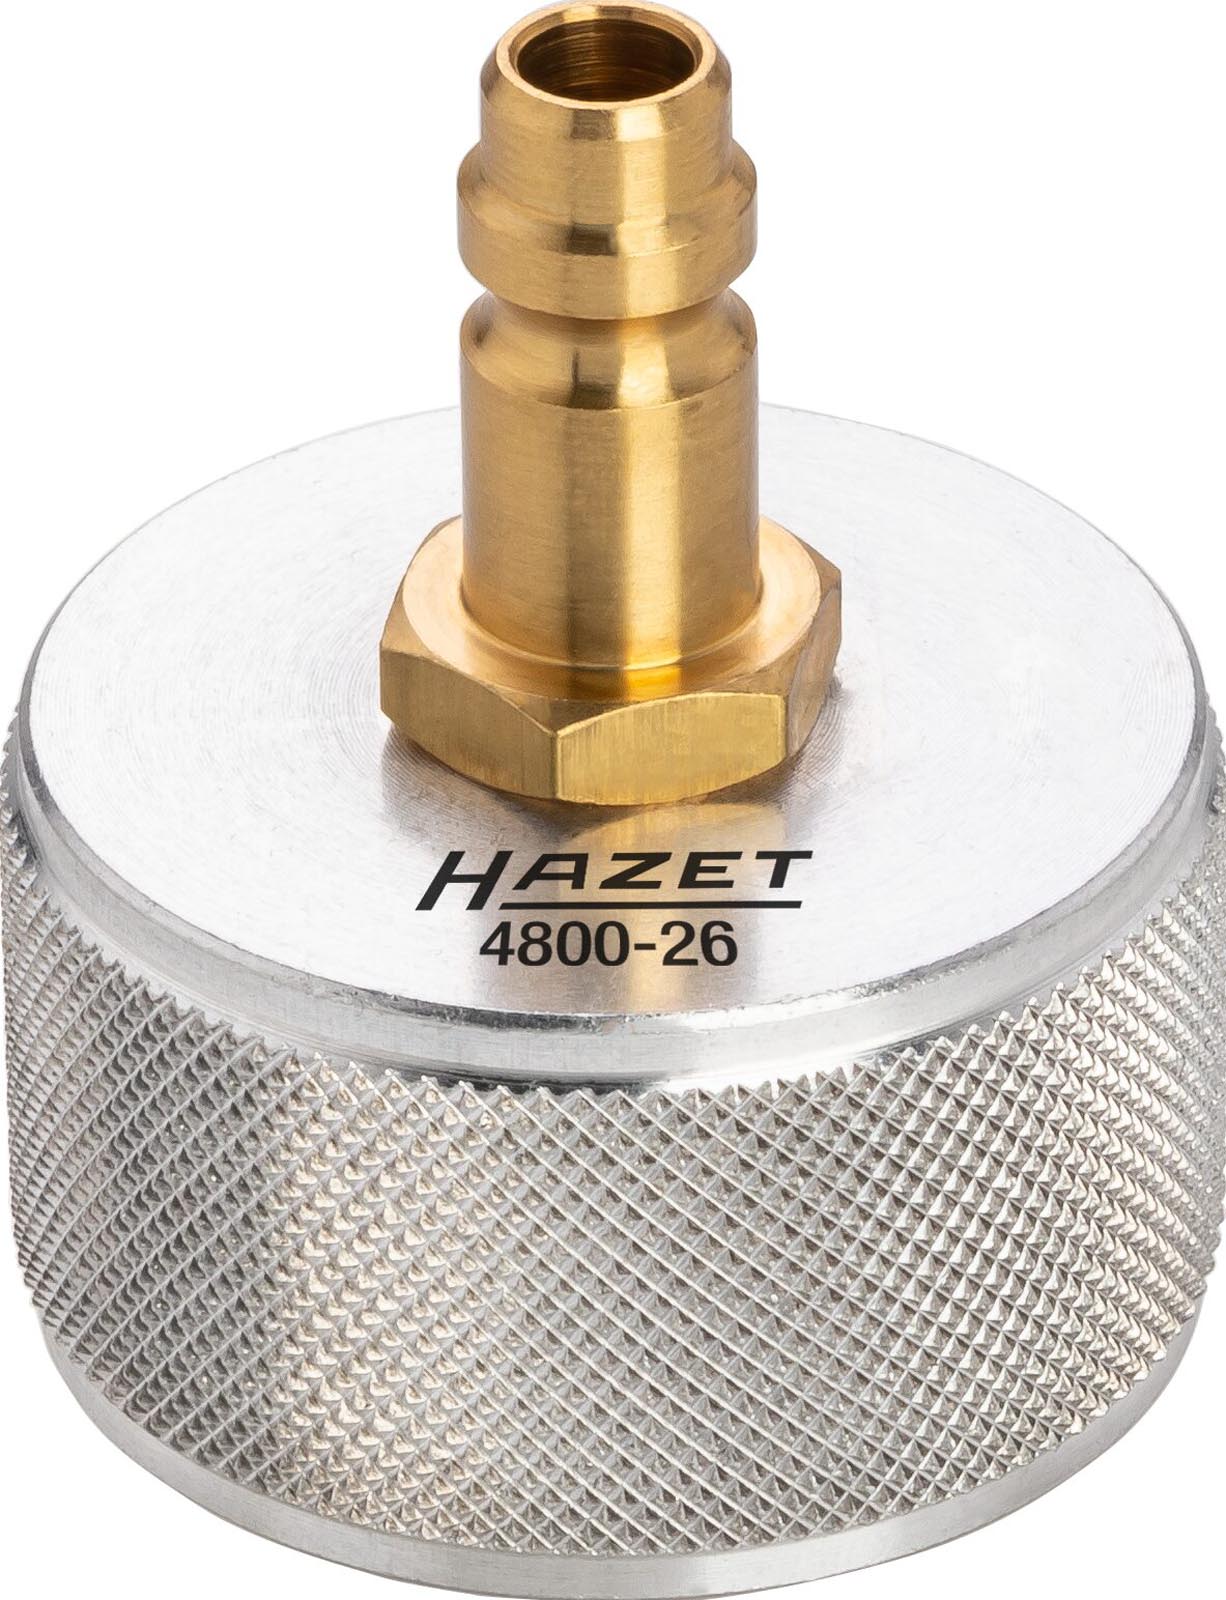 HAZET Adapter, cooling system pressure test set